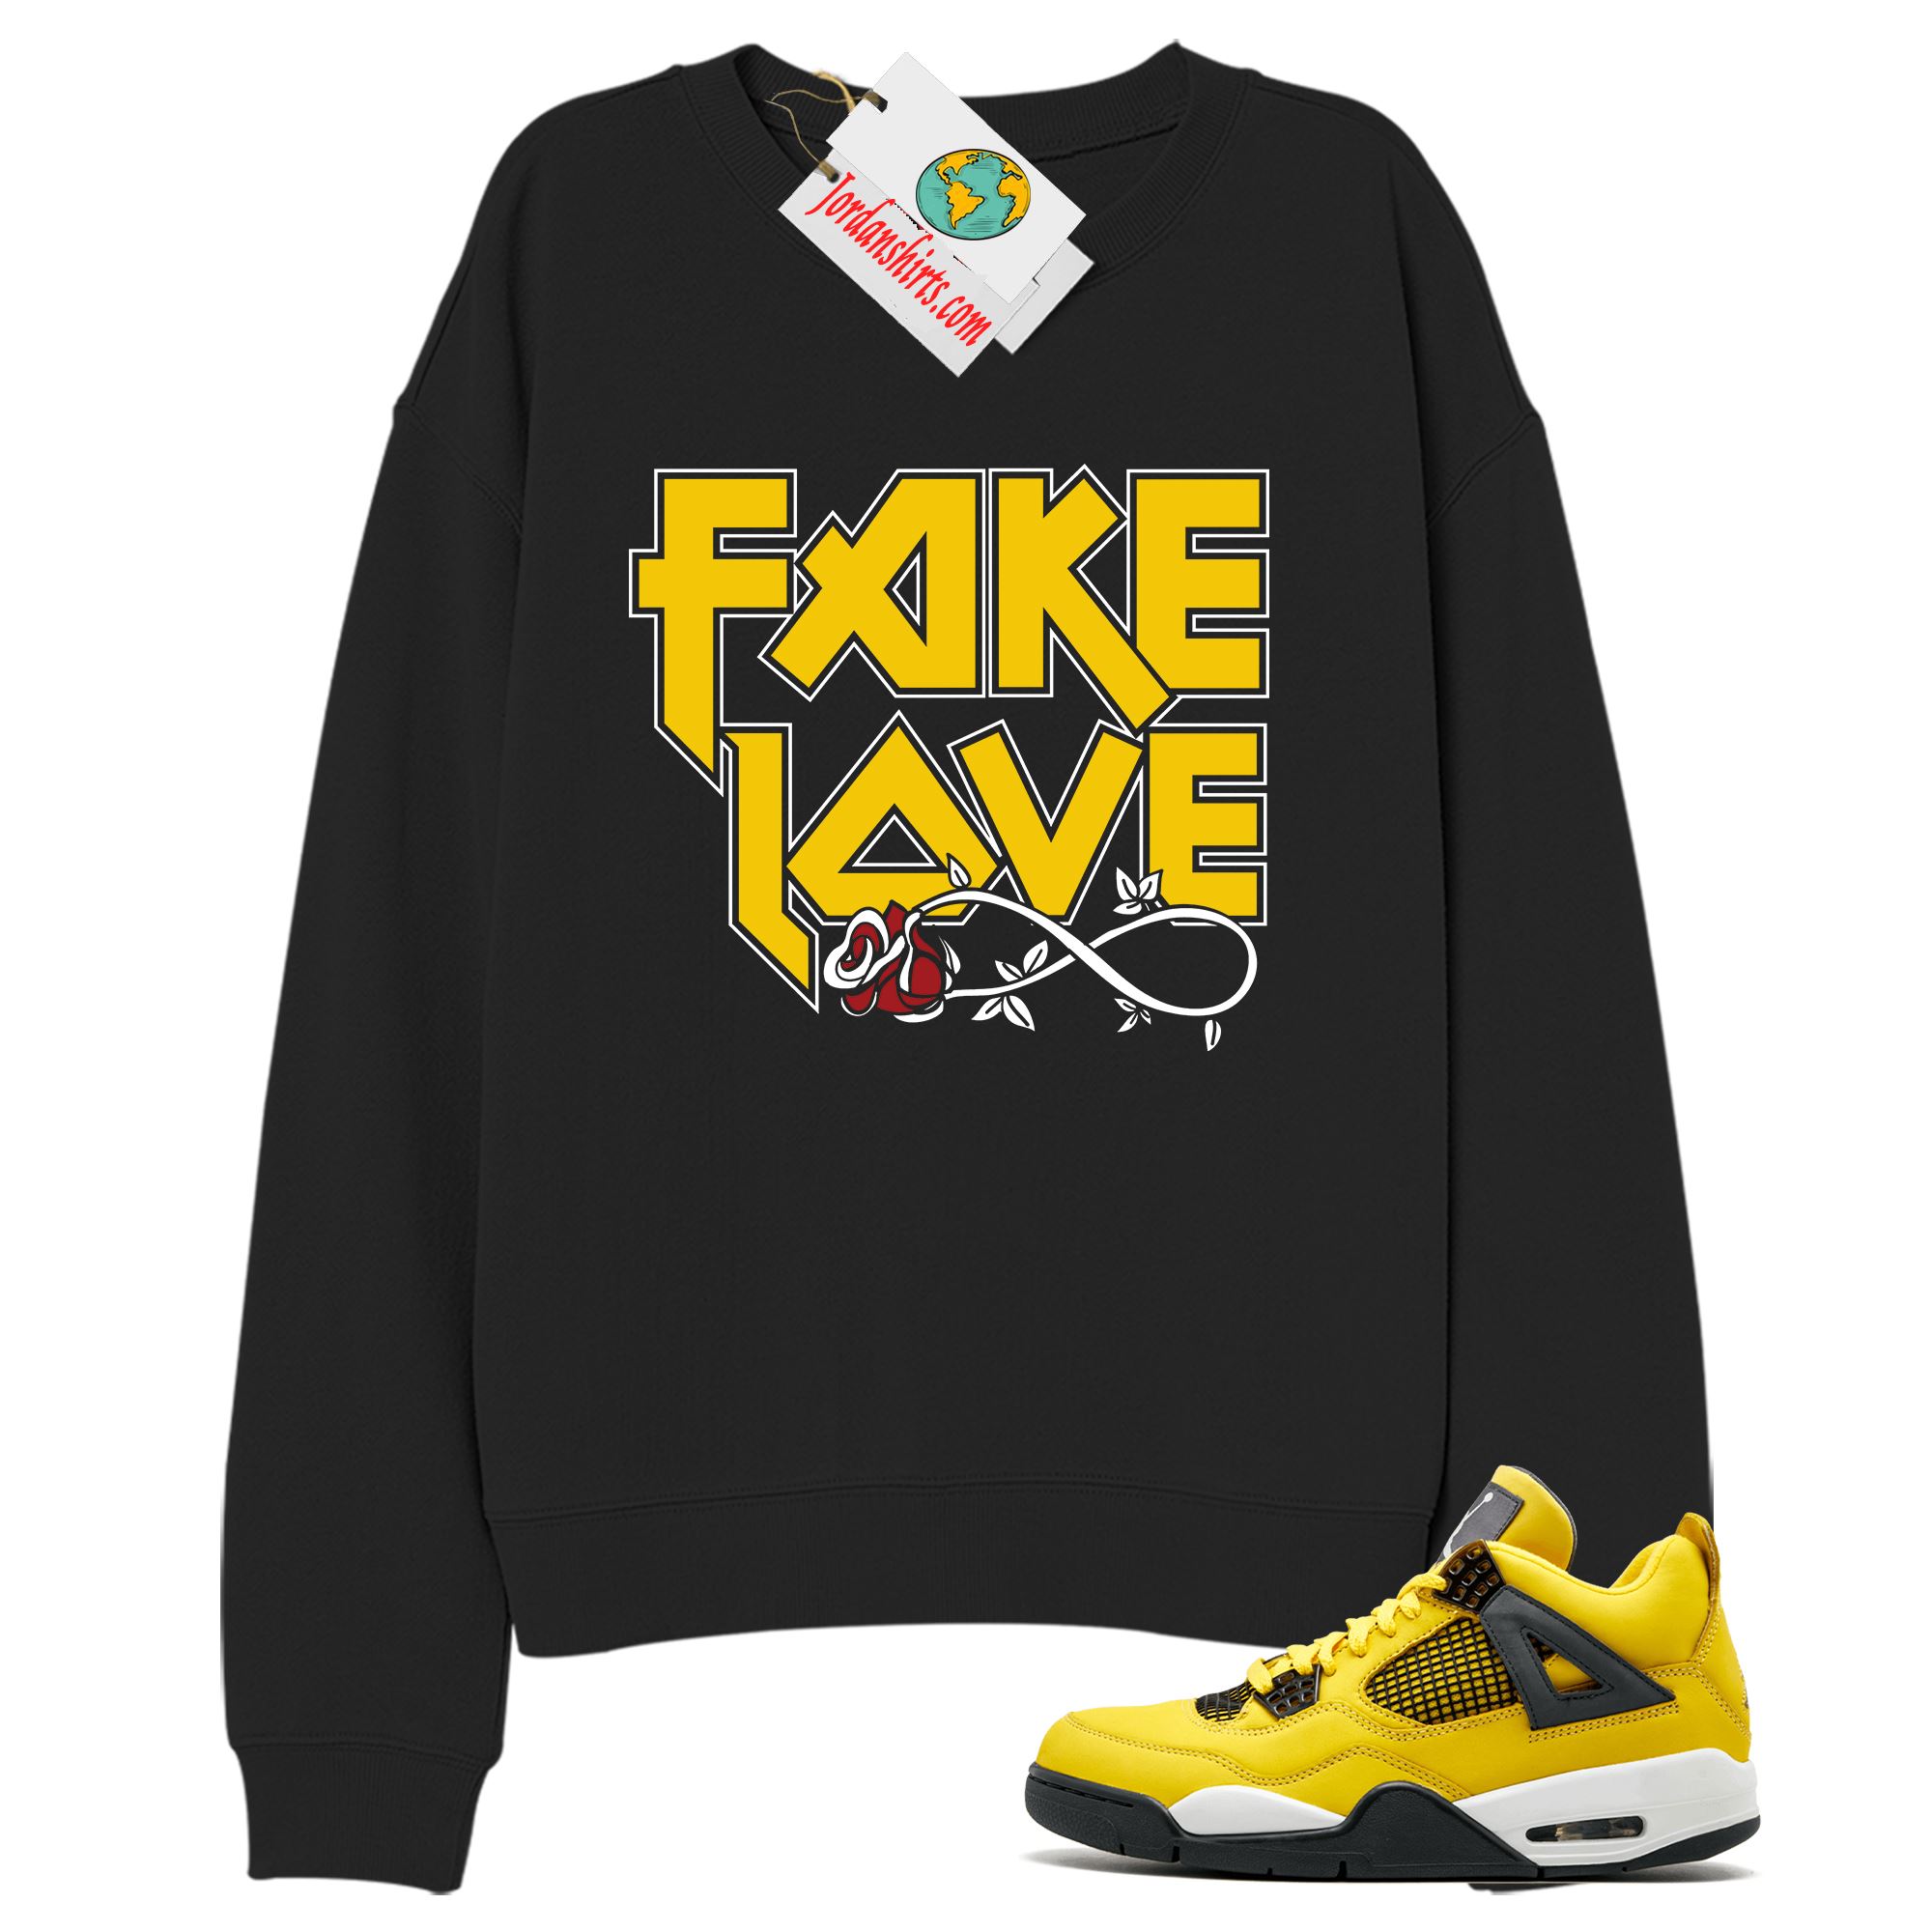 Jordan 4 Sweatshirt, Fake Love Infinity Rose Black Sweatshirt Air Jordan 4 Tour Yellow Lightning 4s Full Size Up To 5xl